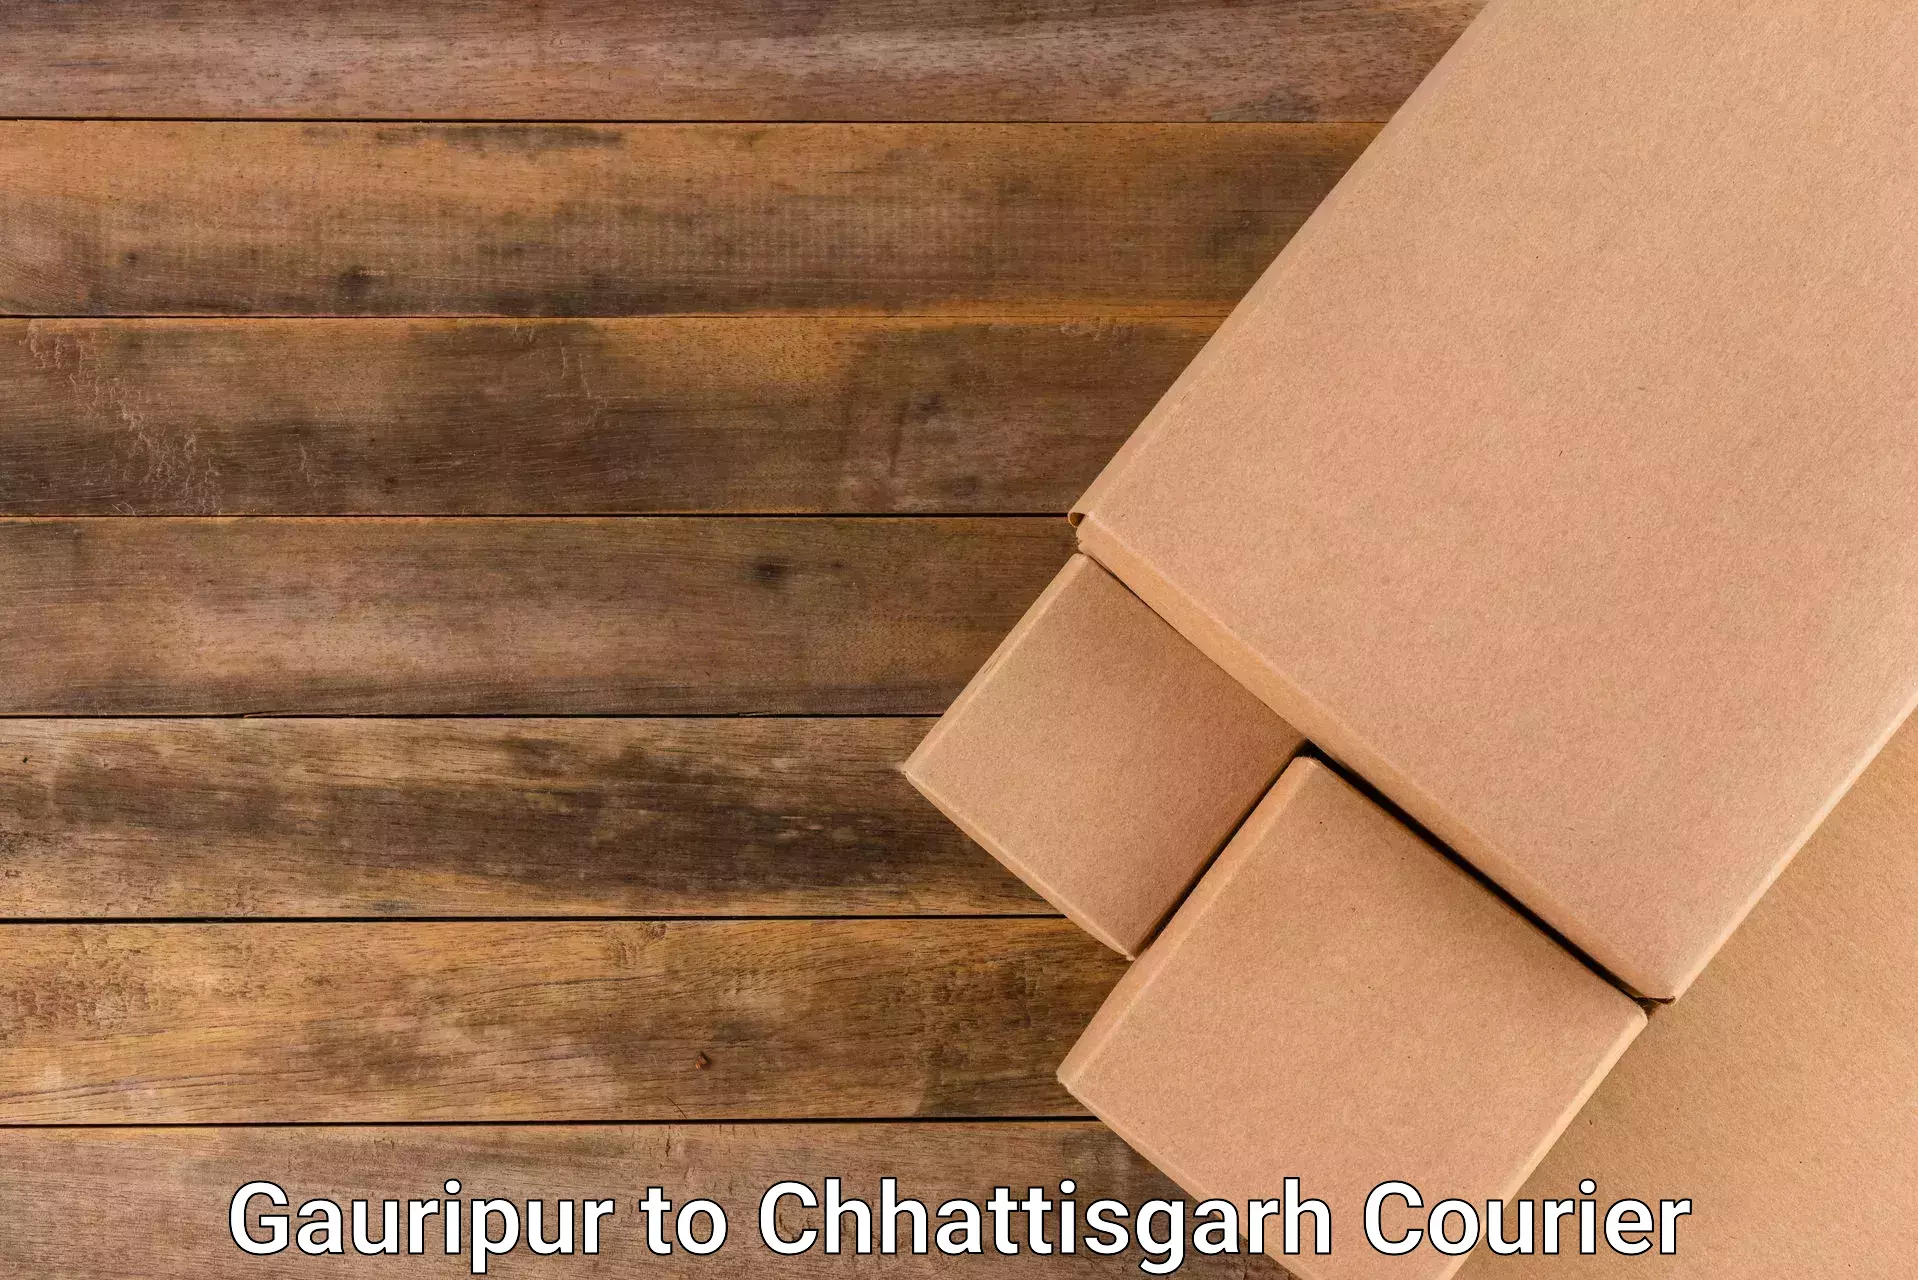 Customer-oriented courier services Gauripur to Wadrafnagar